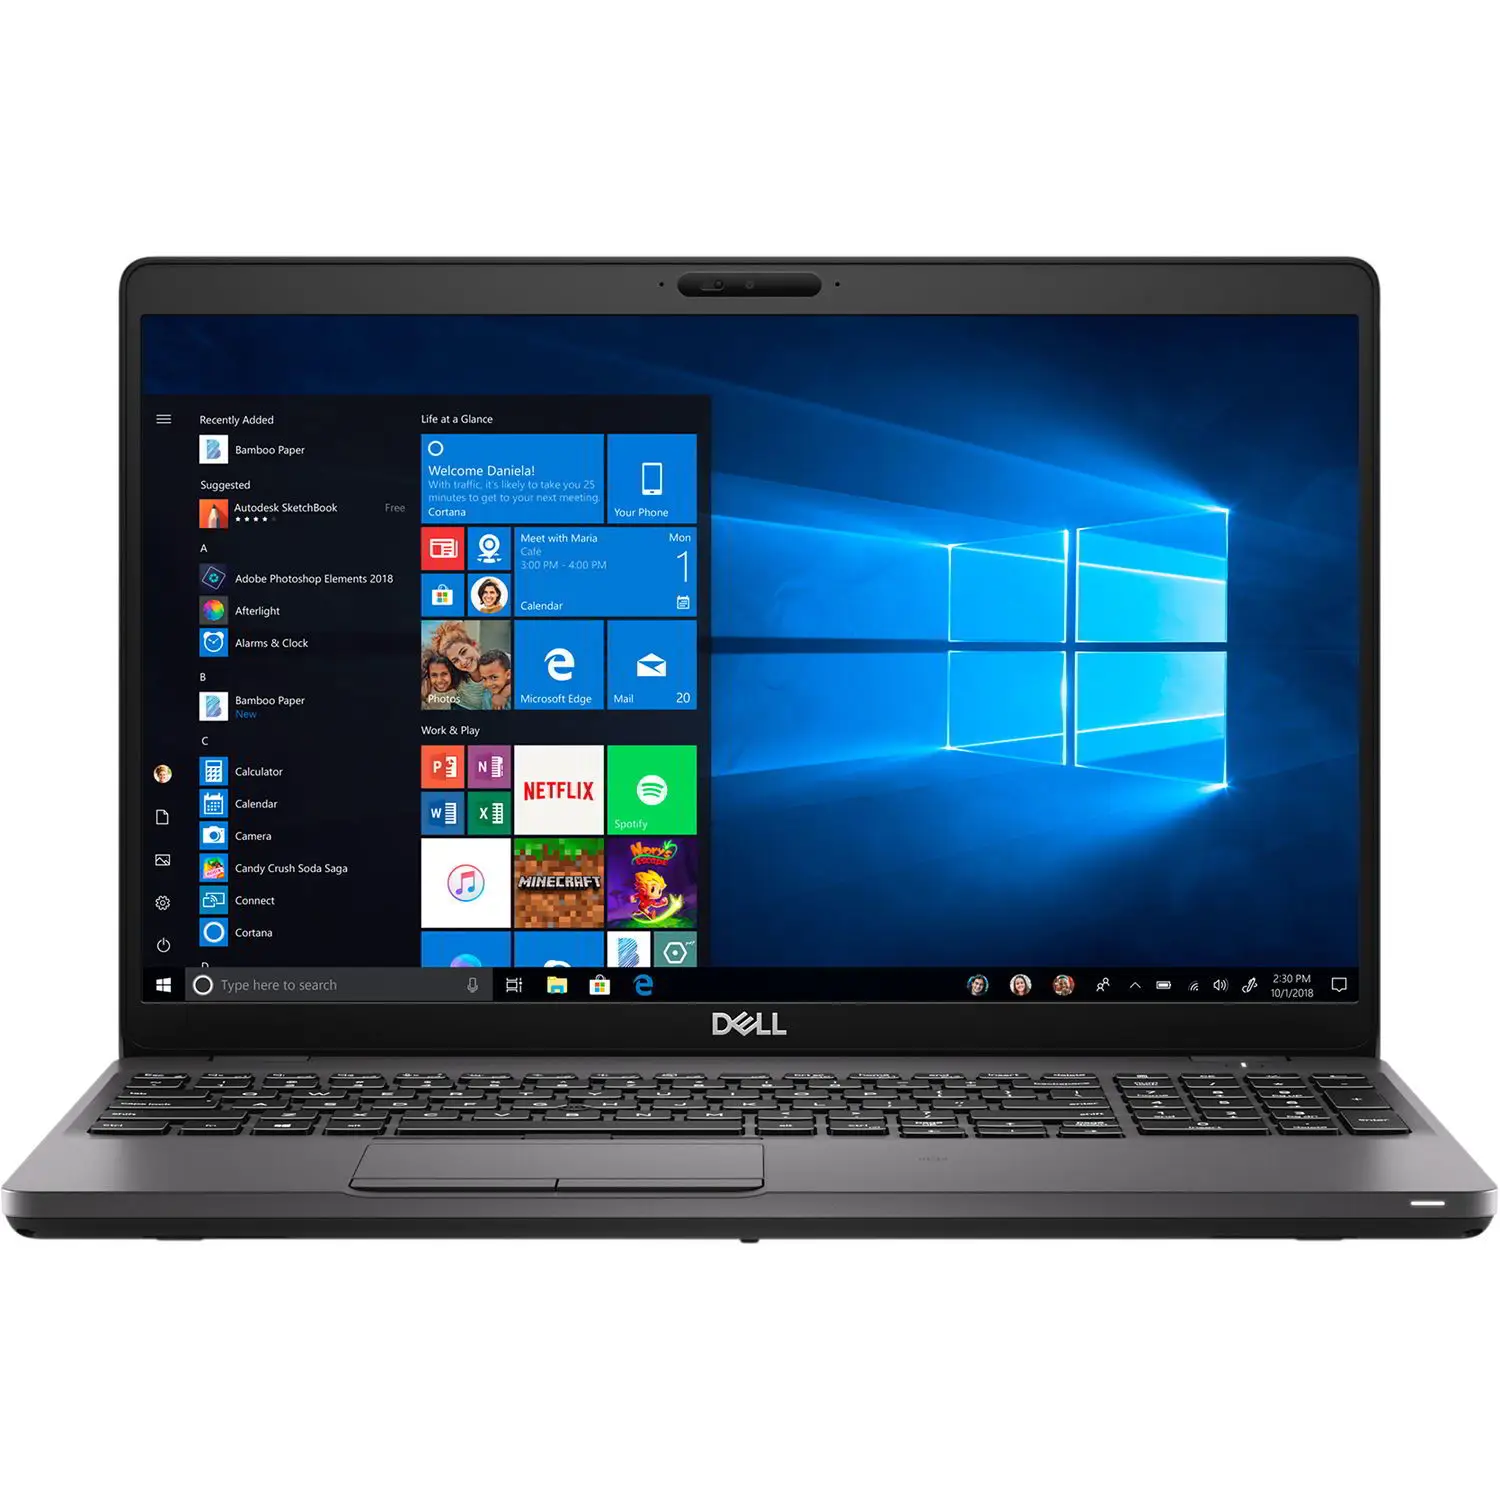 Használt laptop ajánló: Dell latitude 5500 – A megbízható választás